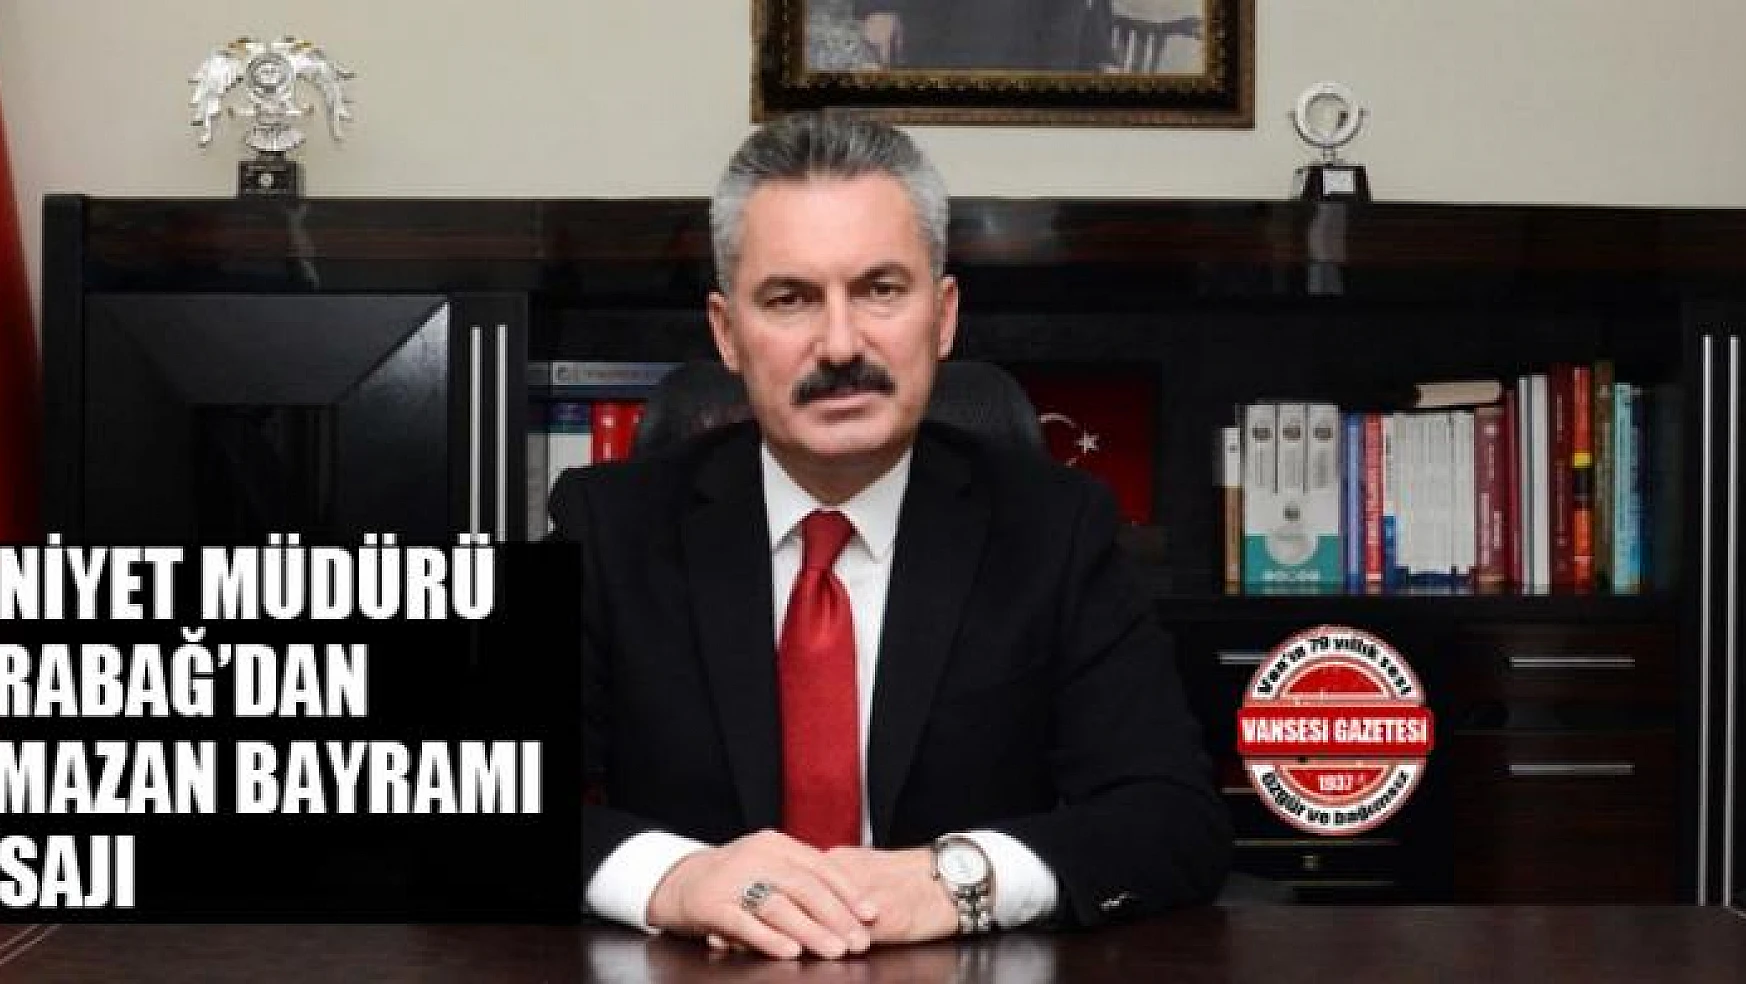 Emniyet Müdürü Karabağ'dan Ramazan bayramı mesajı